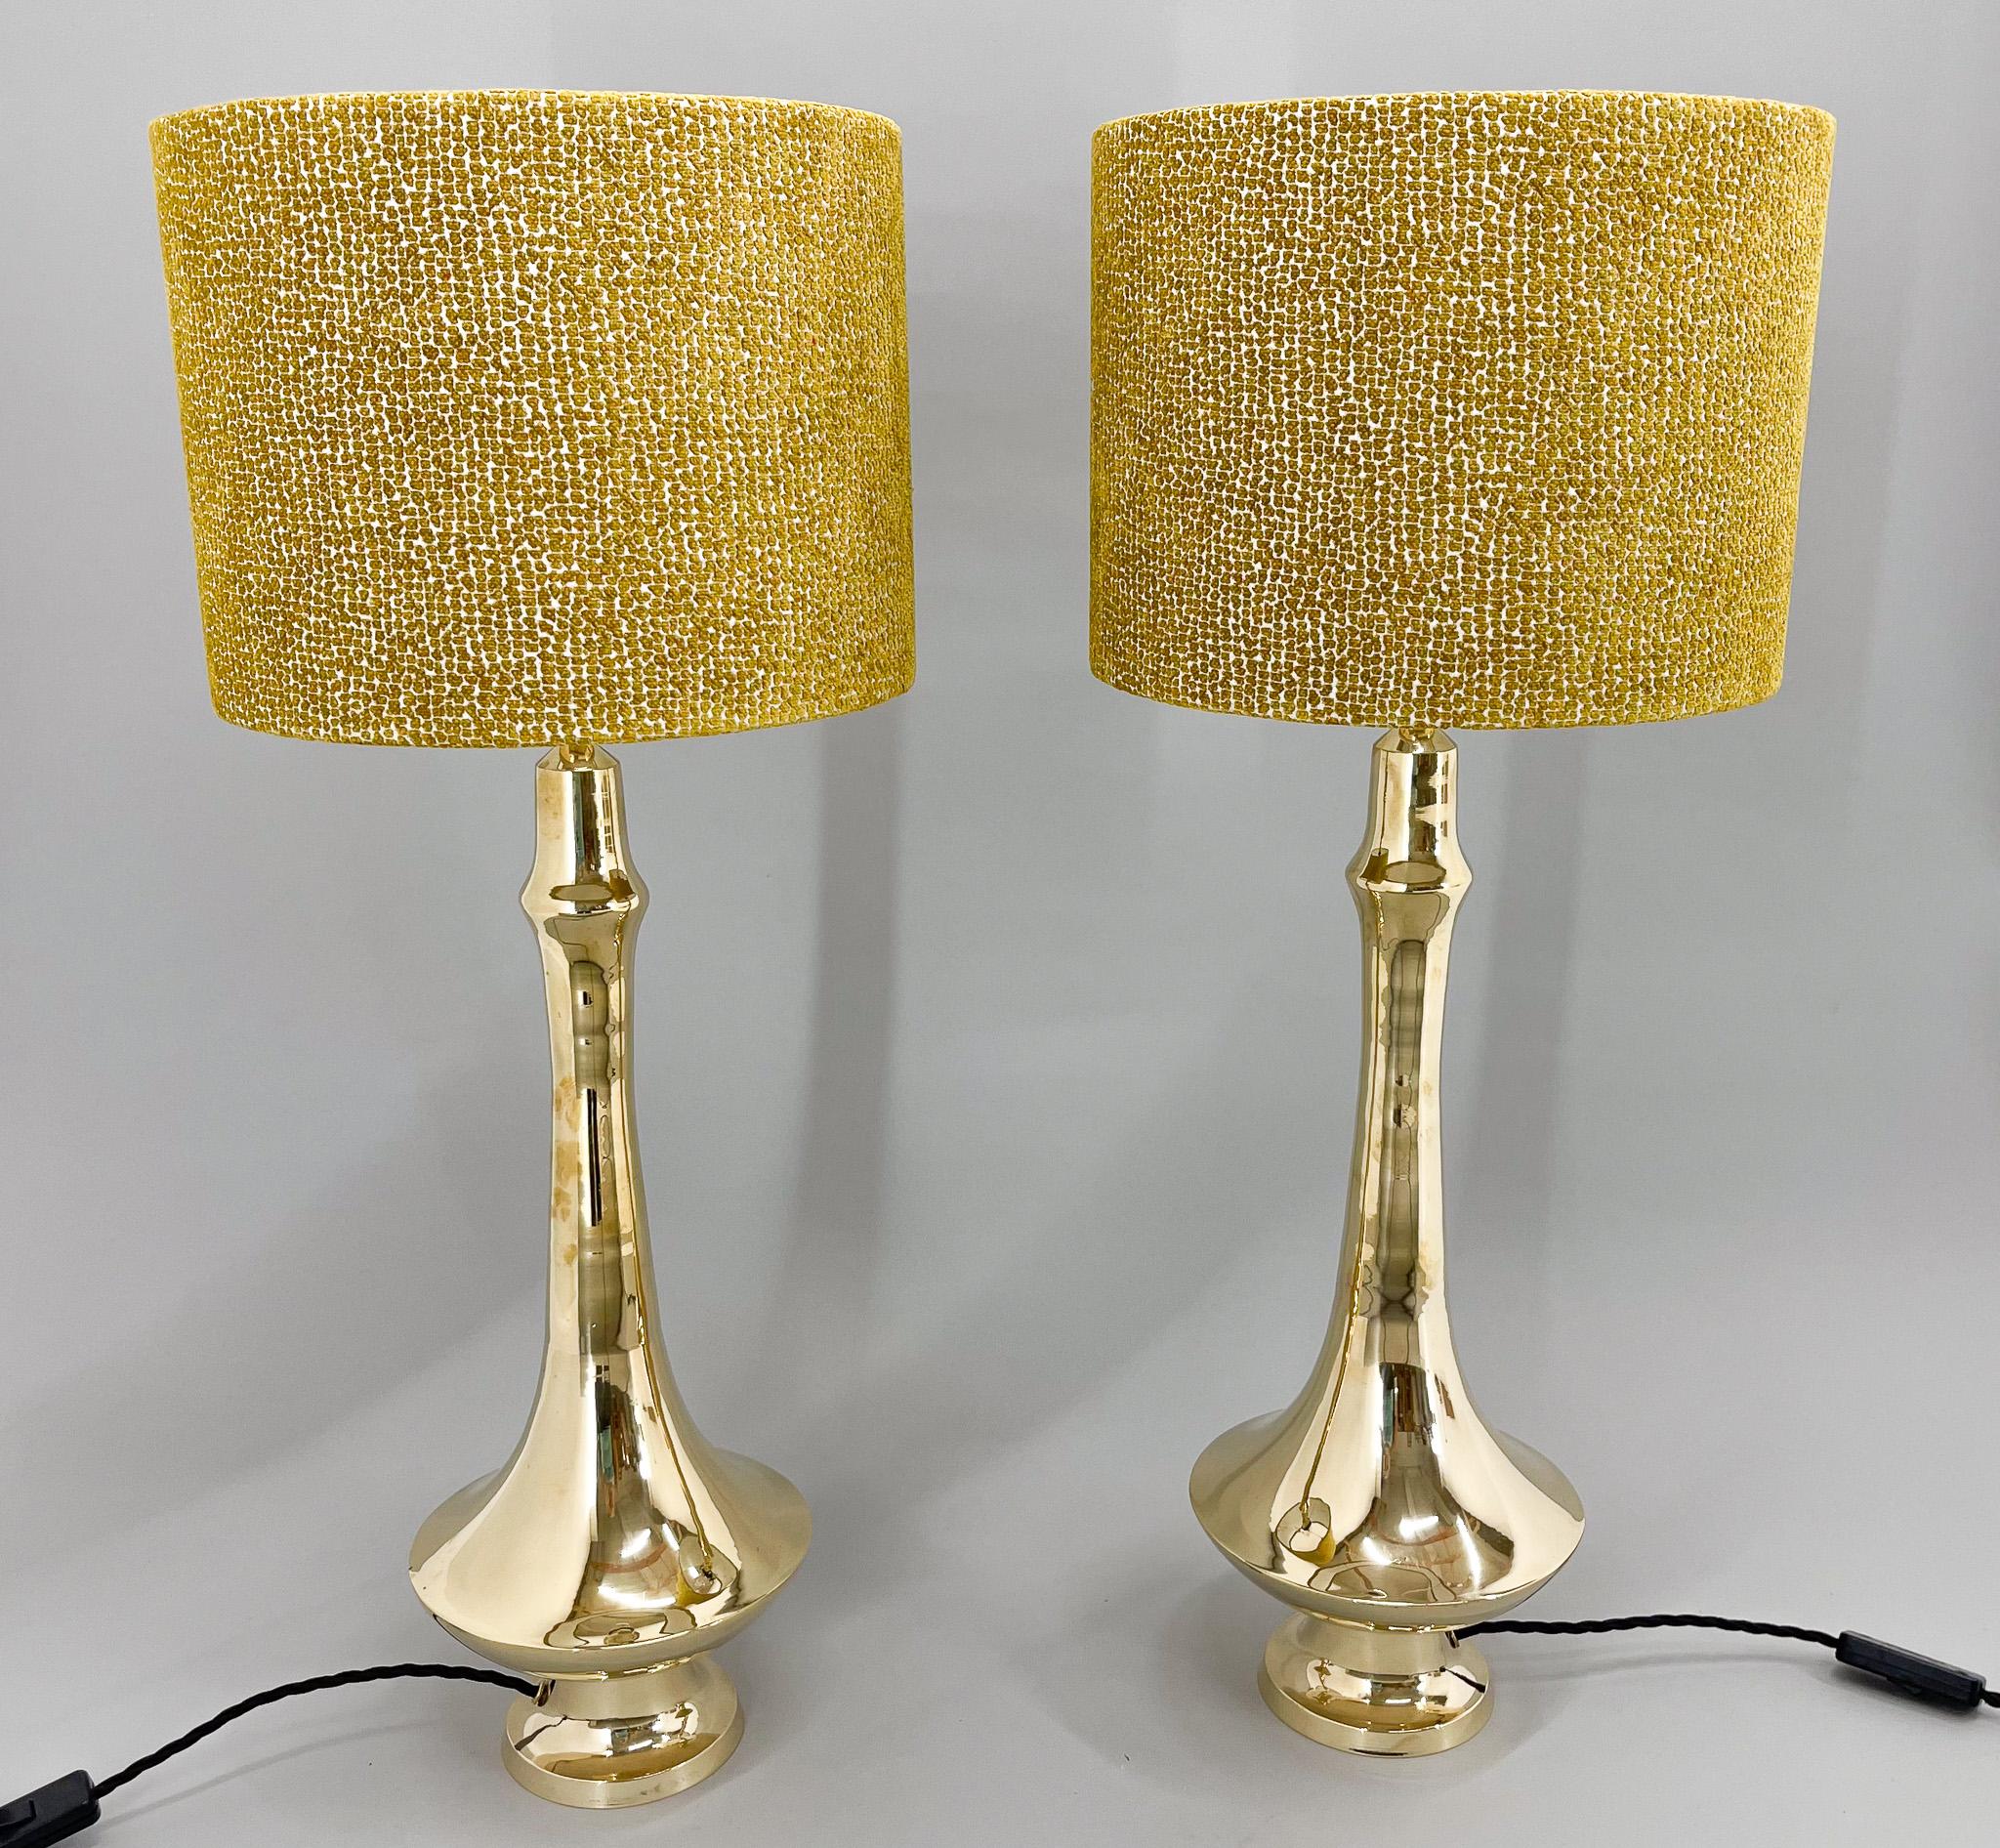 Satz von zwei hohen Vintage-Tischlampen mit Sockel aus Messing. Die Lampen wurden restauriert, haben eine neue Verkabelung und neue handgefertigte Lampenschirme. Glühbirne: 1 x E25-E27. Inklusive US-Steckeradapter.